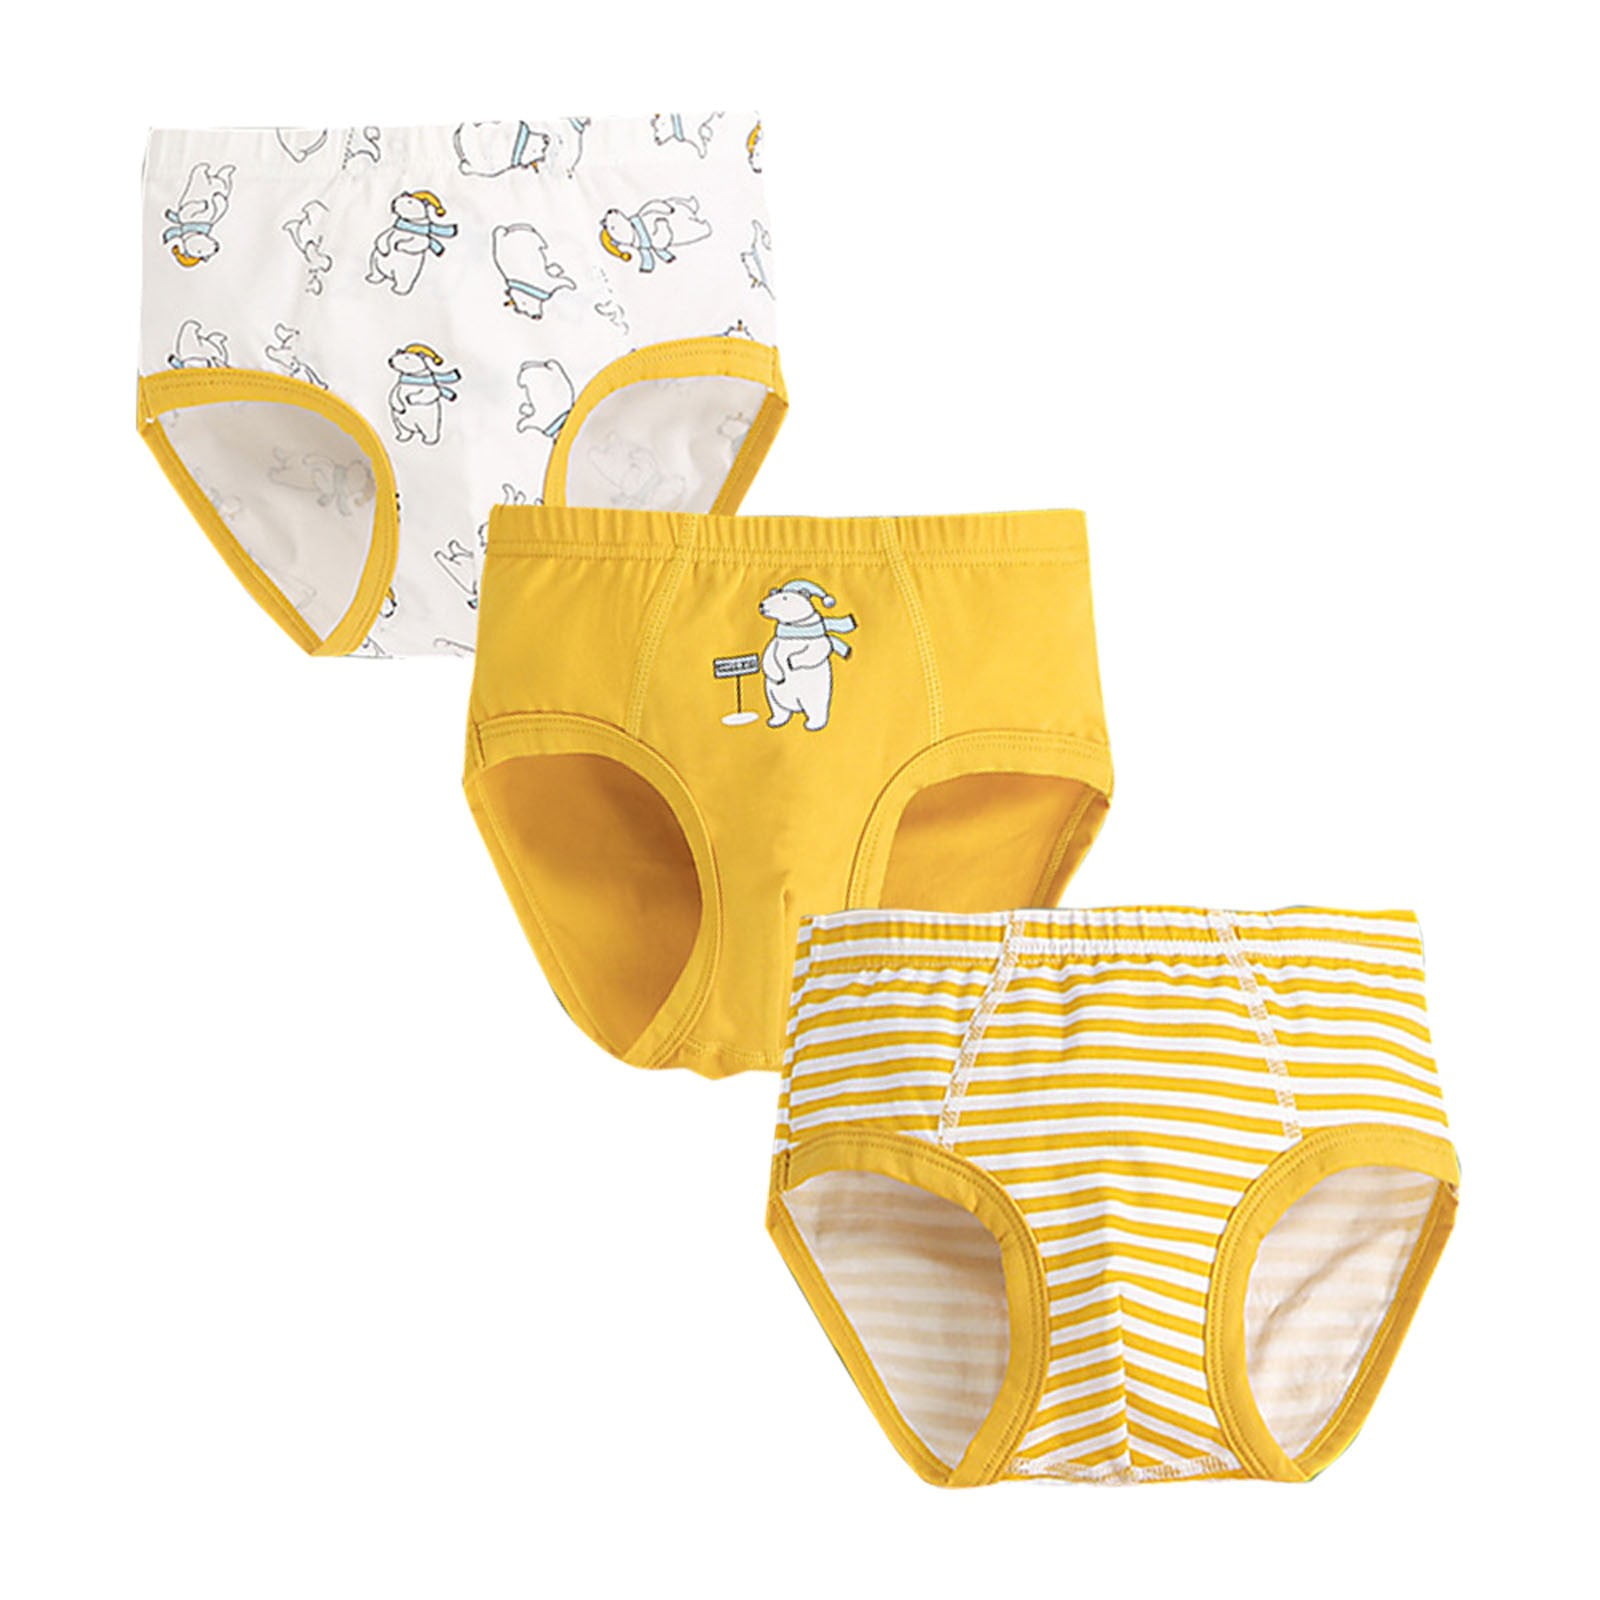 Hanes Toddler Boy Potty Trainer Brief Underwear, 6 Pack, Sizes 2T-4T 